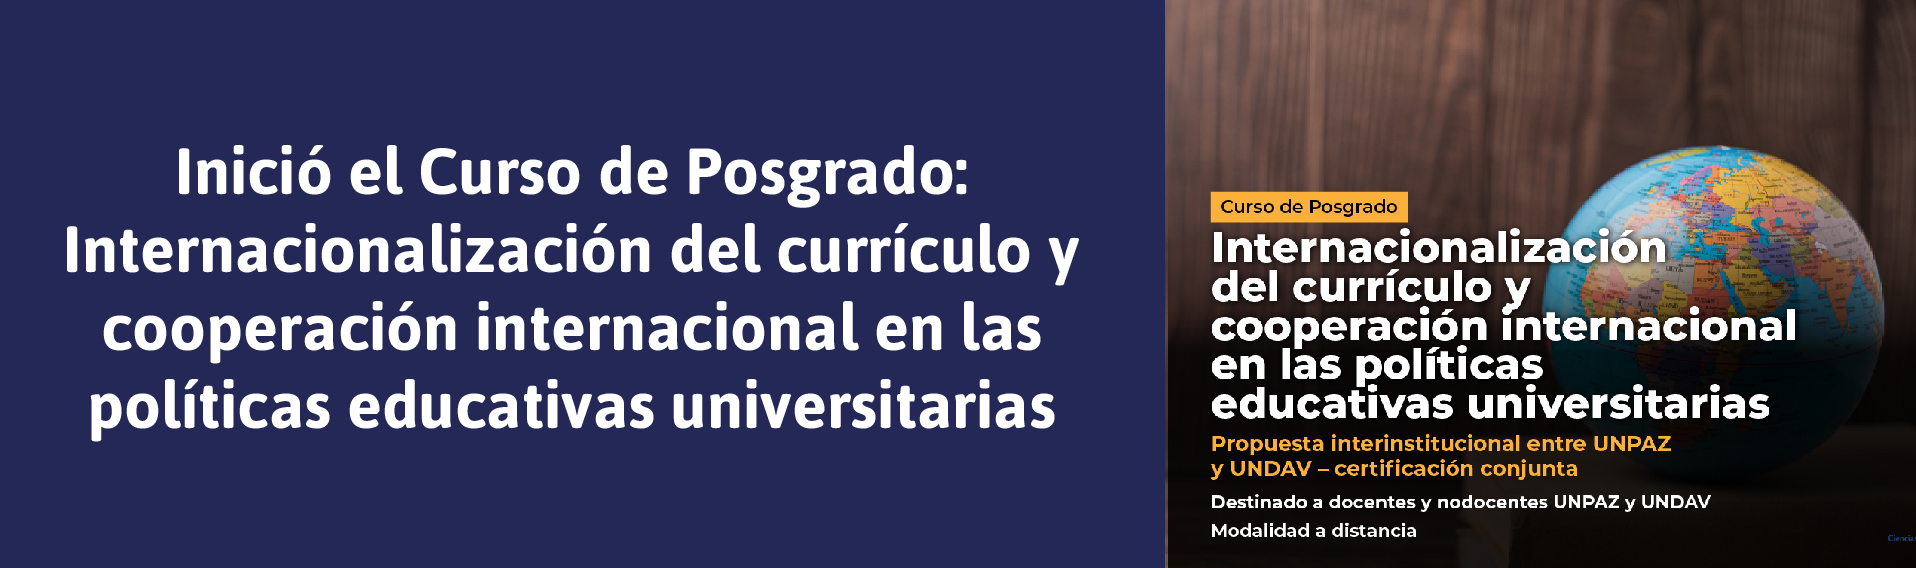 INICIO DEL CURSO DE POSGRADO INTERNACIONALIZACIÓN DEL CURRÍCULO Y COOPERACIÓN INTERNACIONAL EN LAS POLÍTICAS EDUCATIVAS UNIVERSITARIAS - UNPAZ